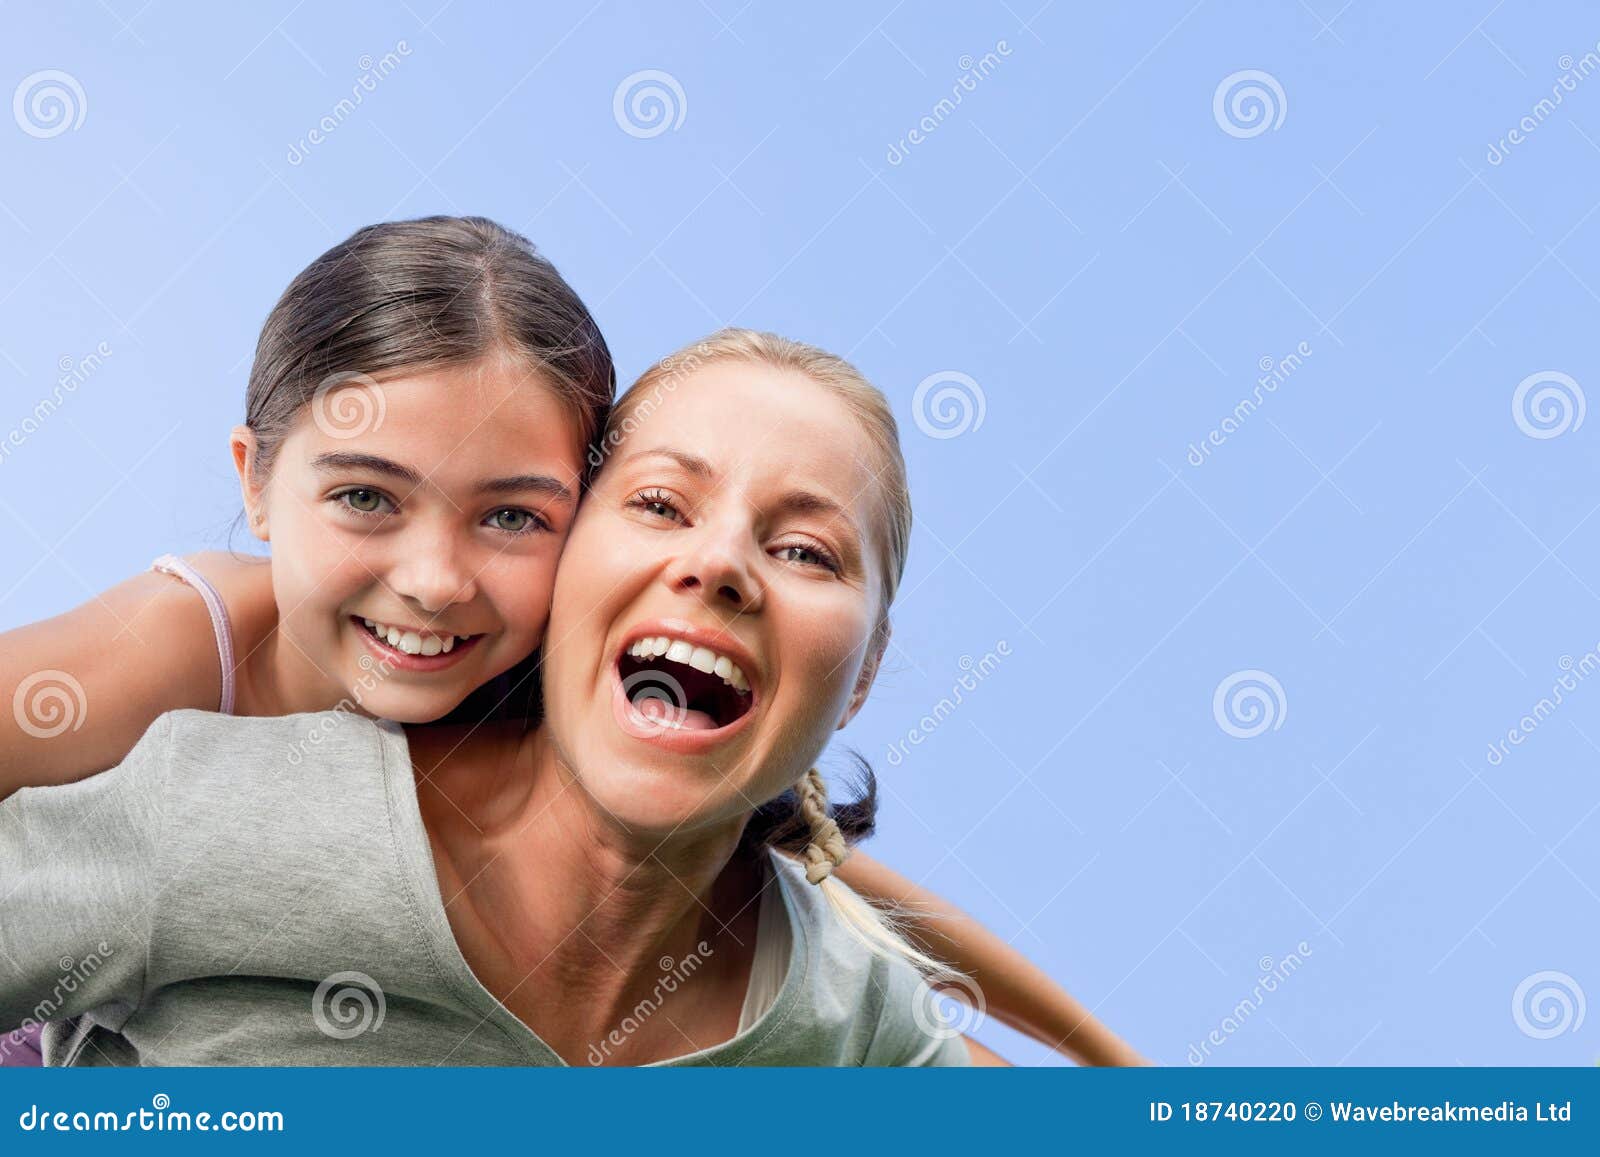 Мама она смеется. Мама с дочкой смеются. Мама смеется с подростком. Мать и дочка дурачятся. Мама с дочкой смеются картинки.